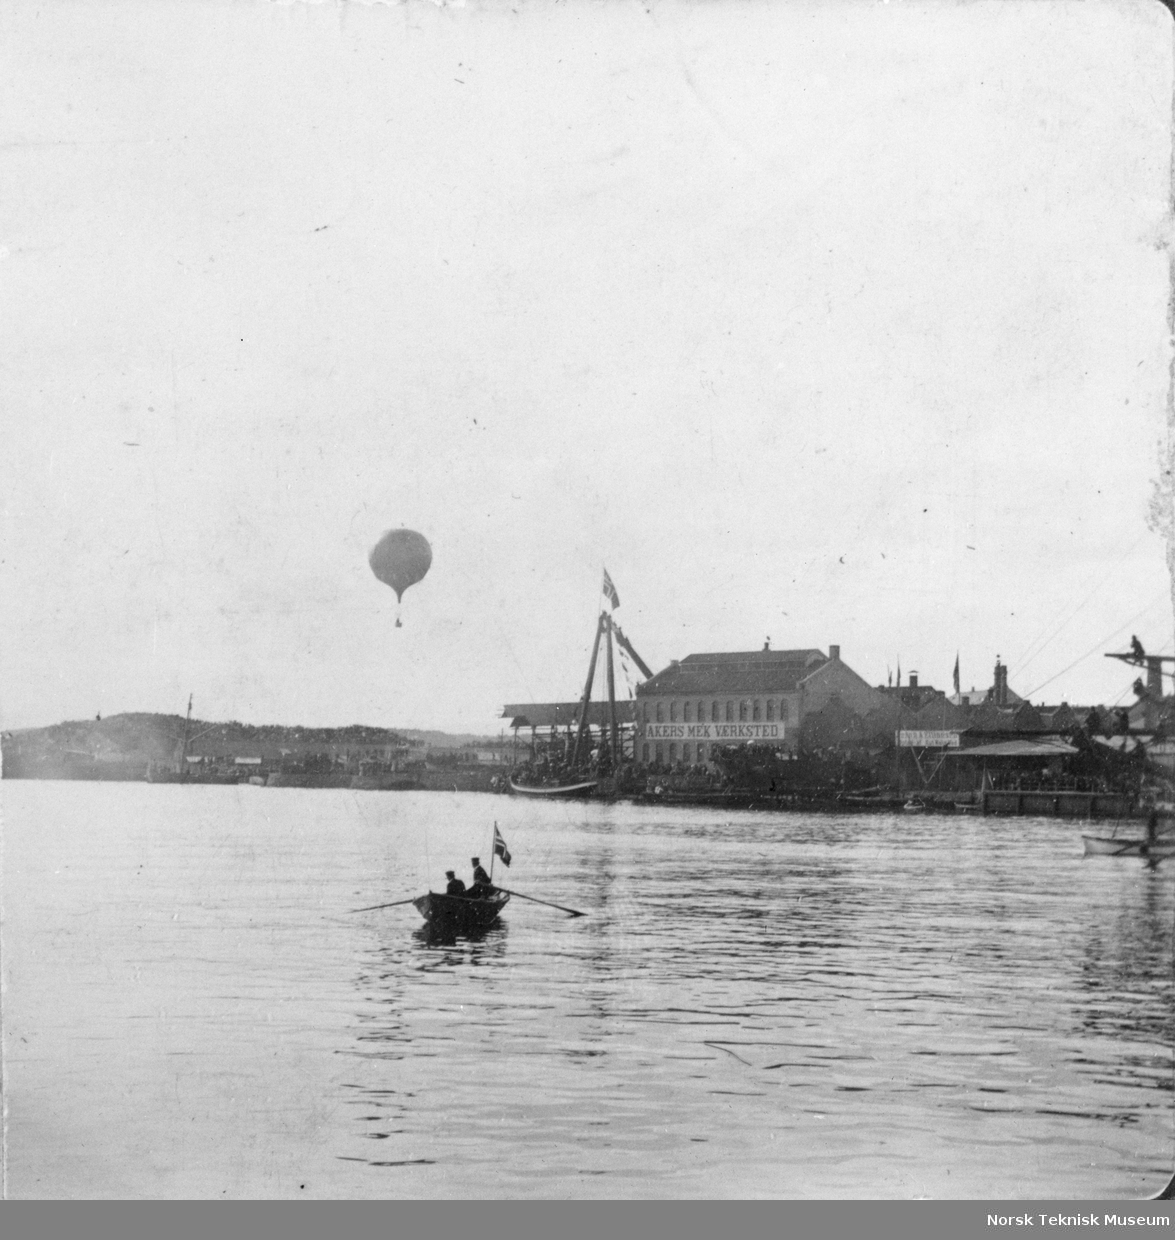 Robåt foran Akers Mek, luftballong i bakgrunnen. Fra Cettis ballongoppstigning 1890